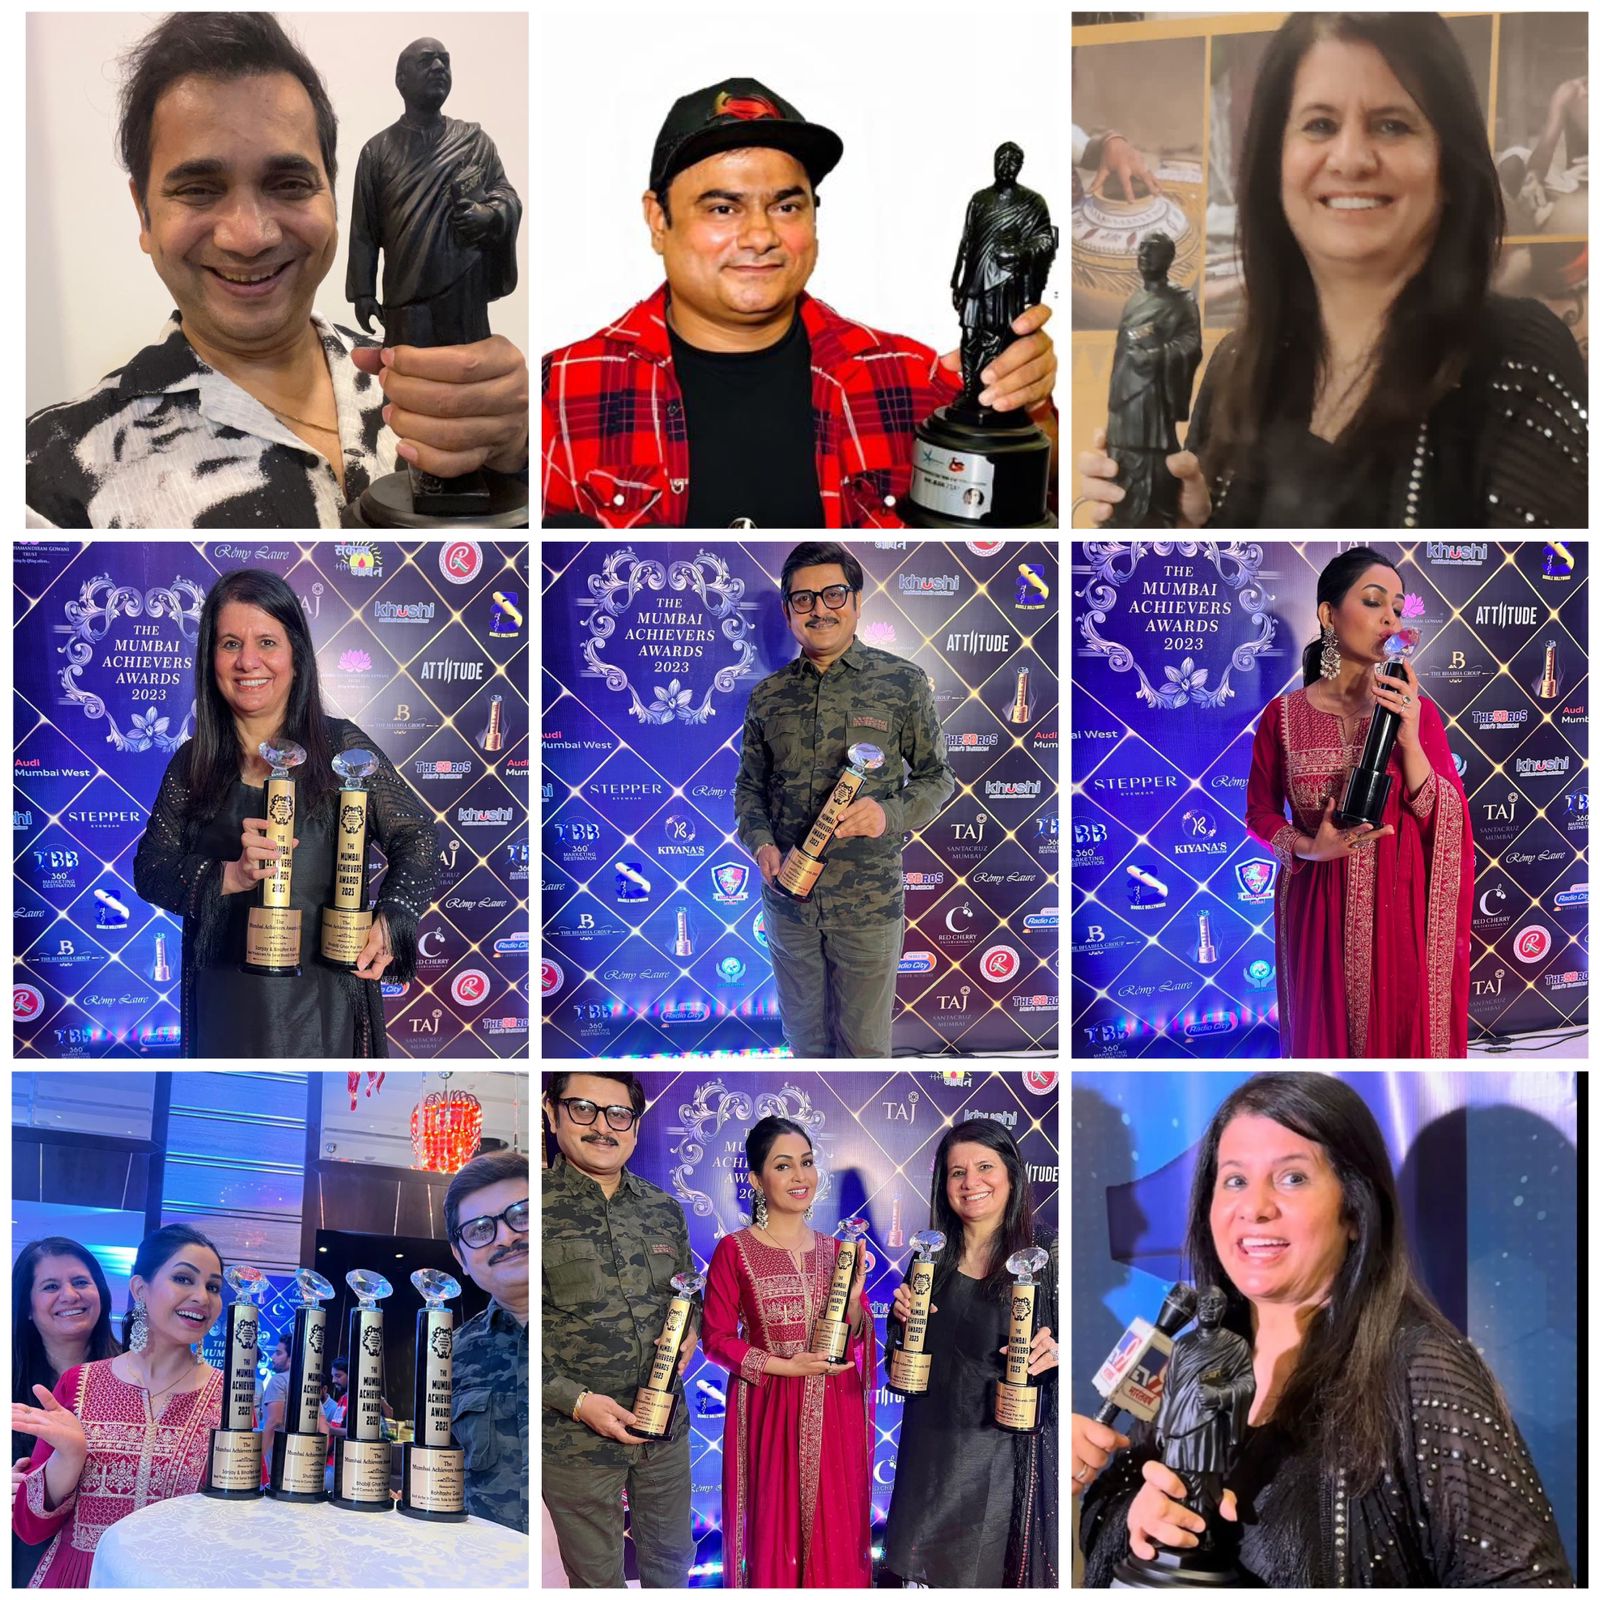 Awards galore at Mumbai Achievers Award 2023 for Bhabiji Ghar Par Hain!